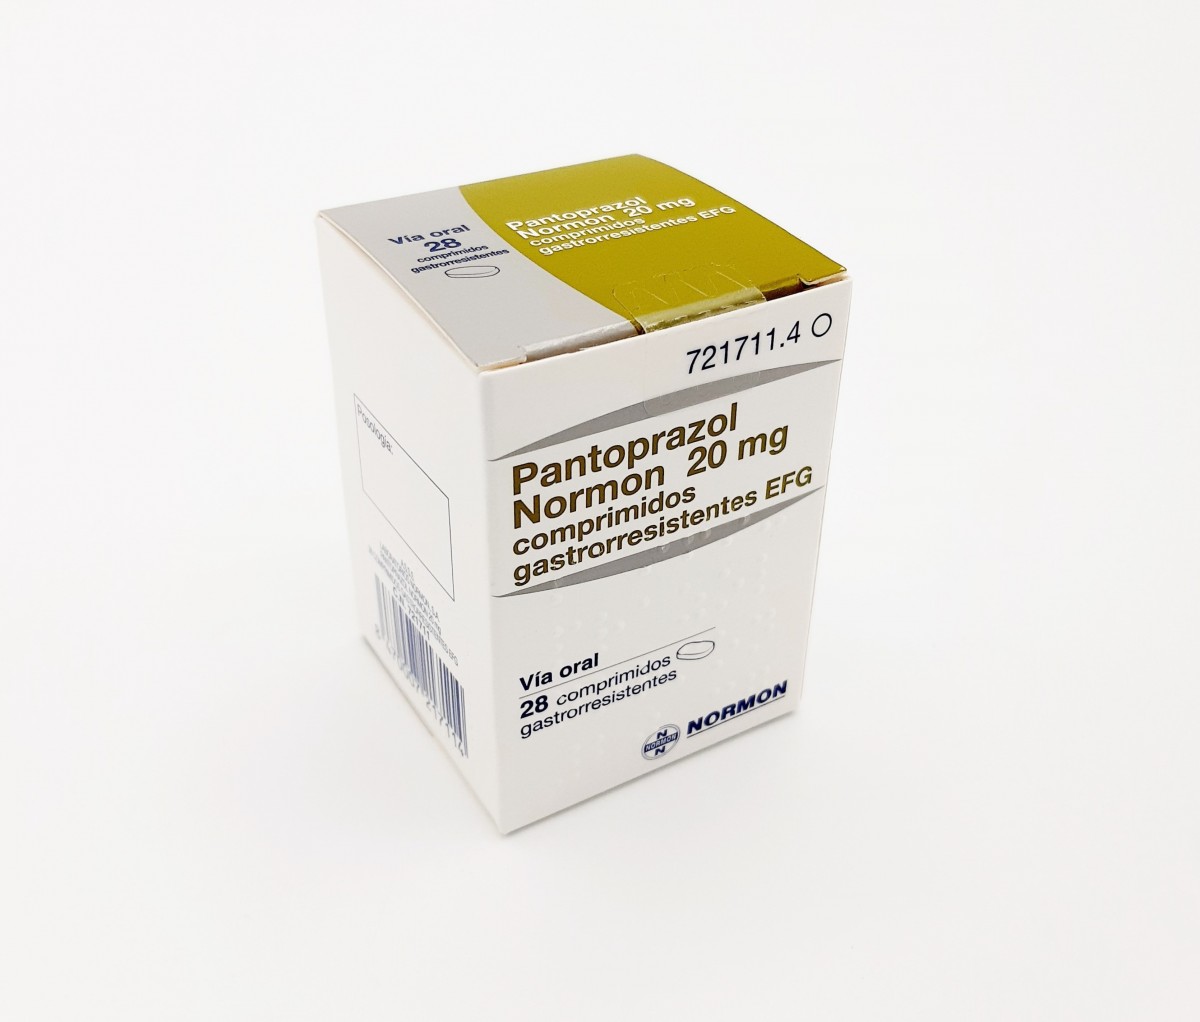 PANTOPRAZOL NORMON 20 mg COMPRIMIDOS GASTRORRESISTENTES EFG, 28 comprimidos (Blister) fotografía del envase.